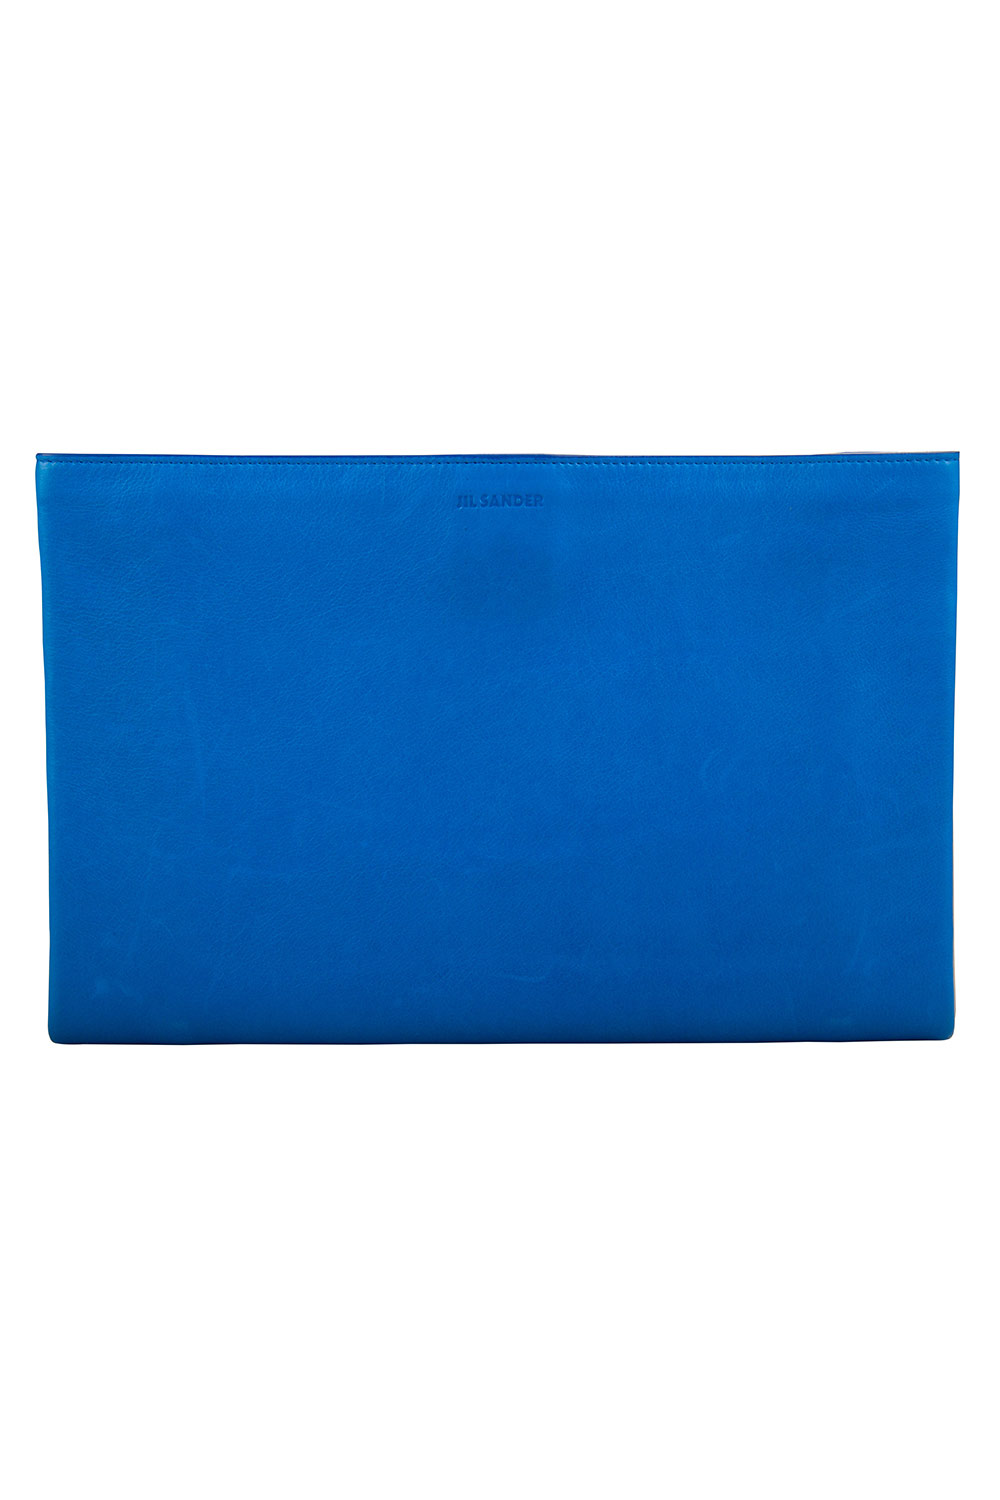 

Jil Sander Blue/White Leather Triple Color Block Clutch